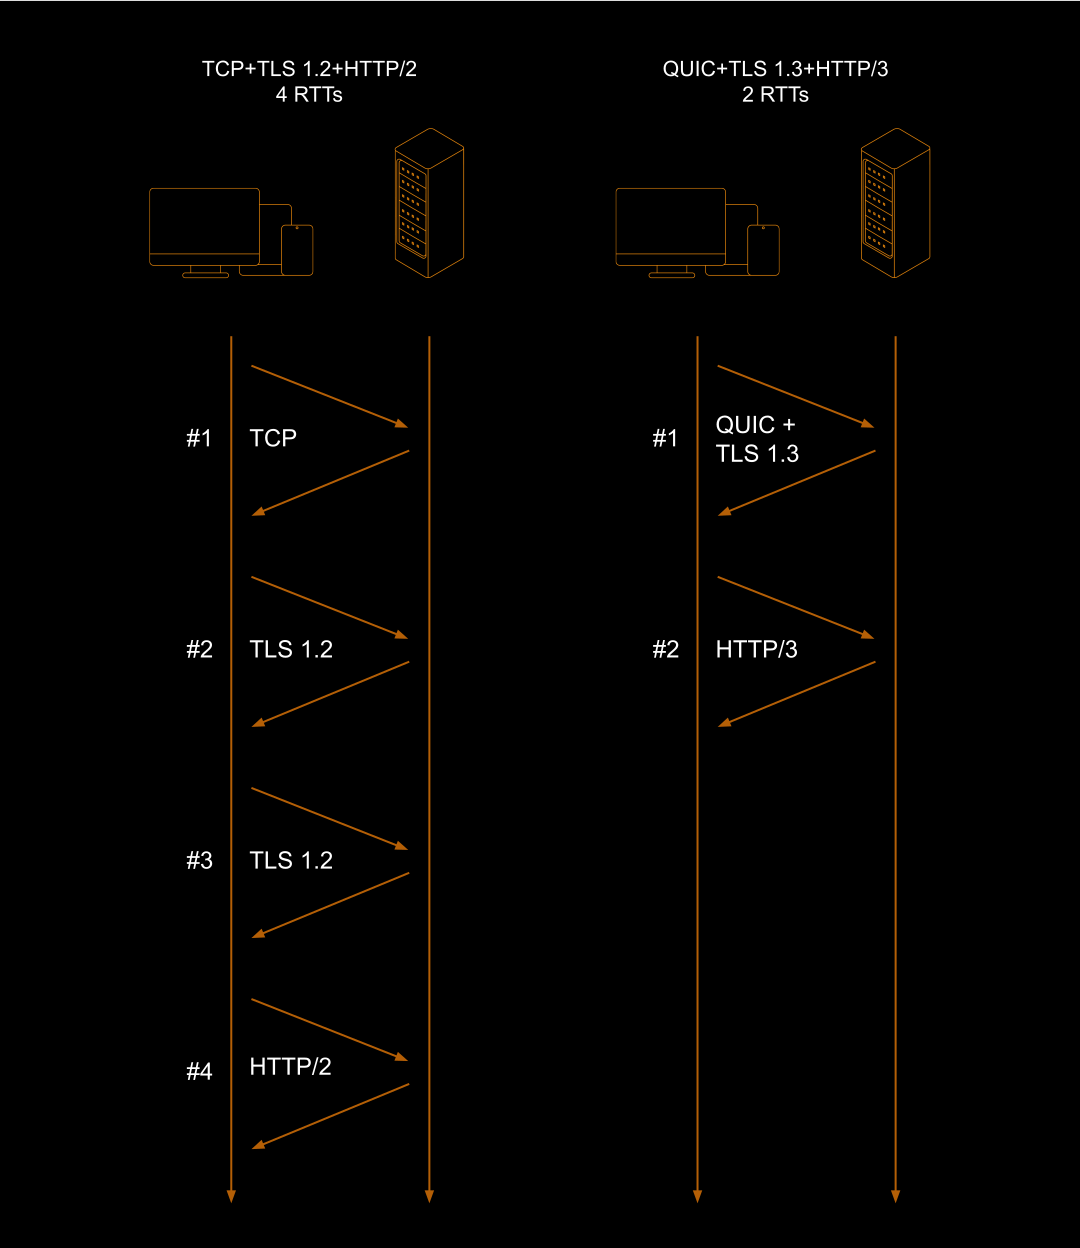 Diagrama comparando o estabelecimento de uma conexão segura em HTTP/2 e HTTP/3. Enquanto em HTTP/2 são necessárias quatro RTTs, em HTTP/3 bastam duas.